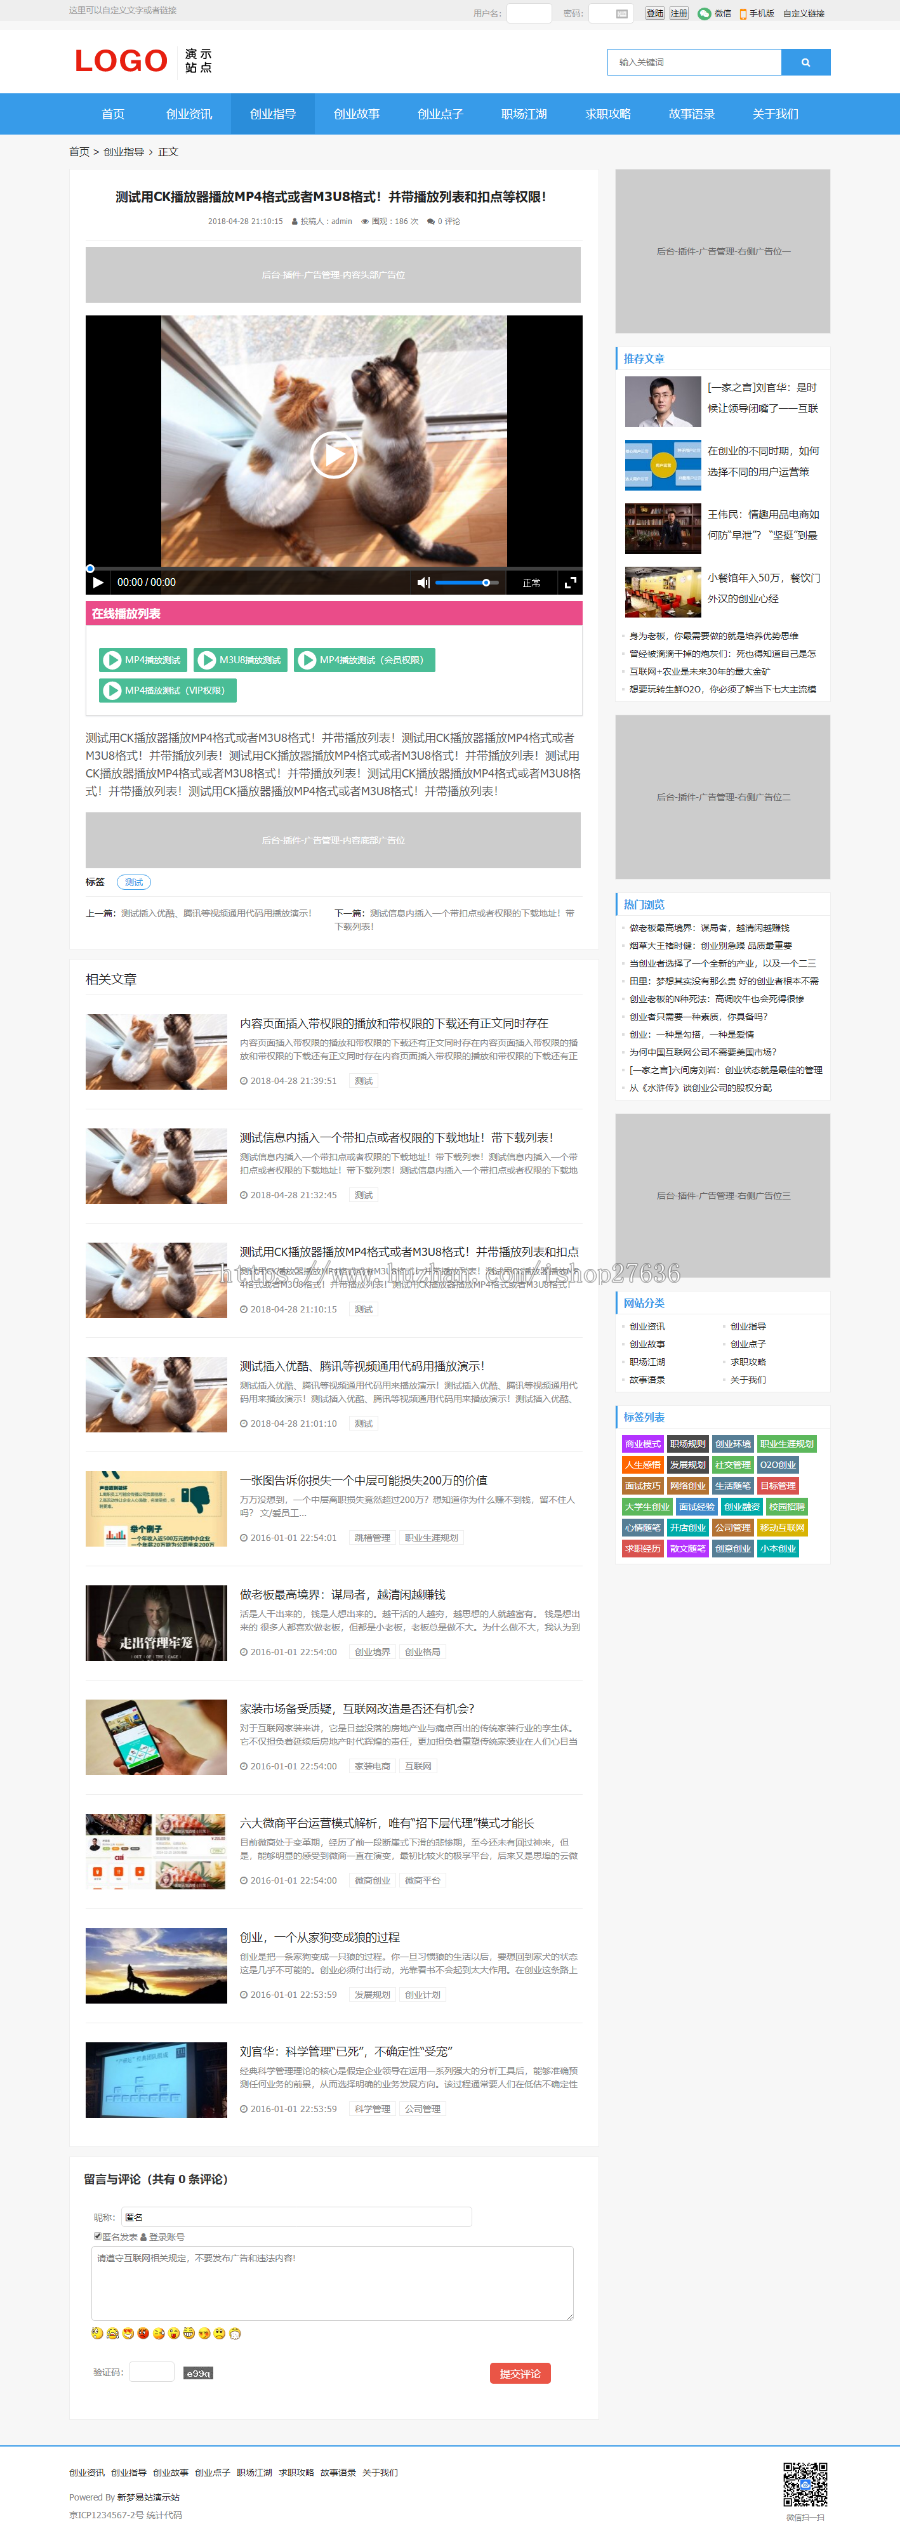 【易站网】视频图片新闻资讯软件下载博客帝国CMS自适应响应式HTML5整站模板